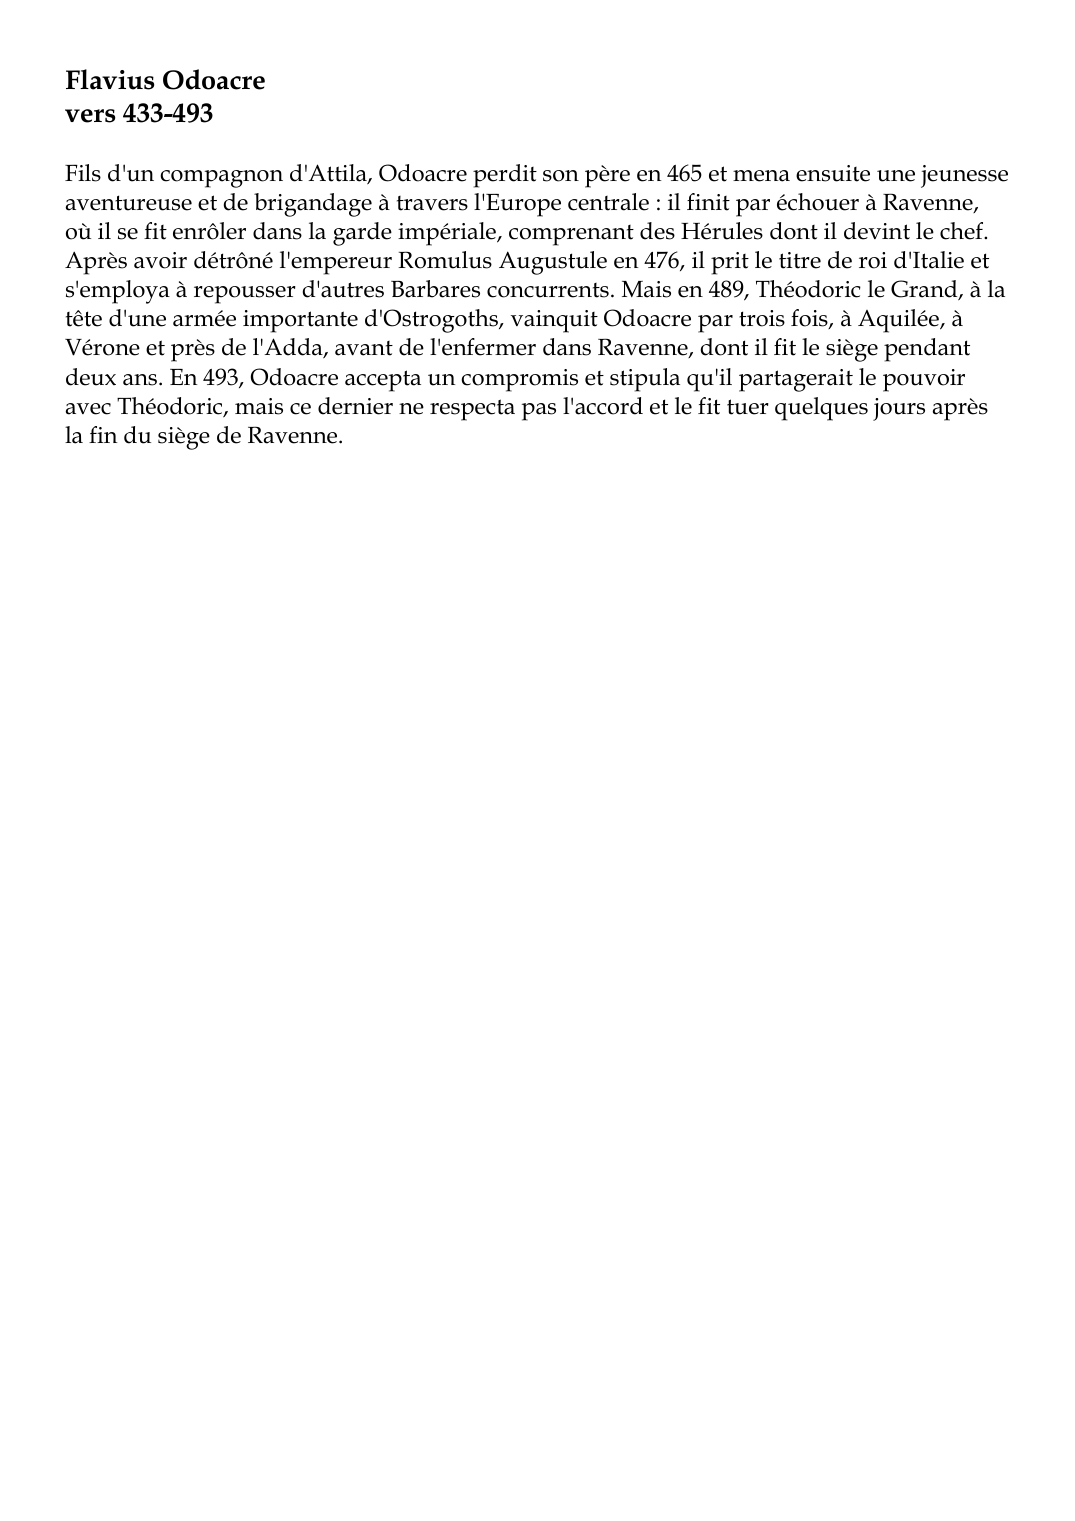 Prévisualisation du document Flavius Odoacrevers 433-493Fils d'un compagnon d'Attila, Odoacre perdit son père